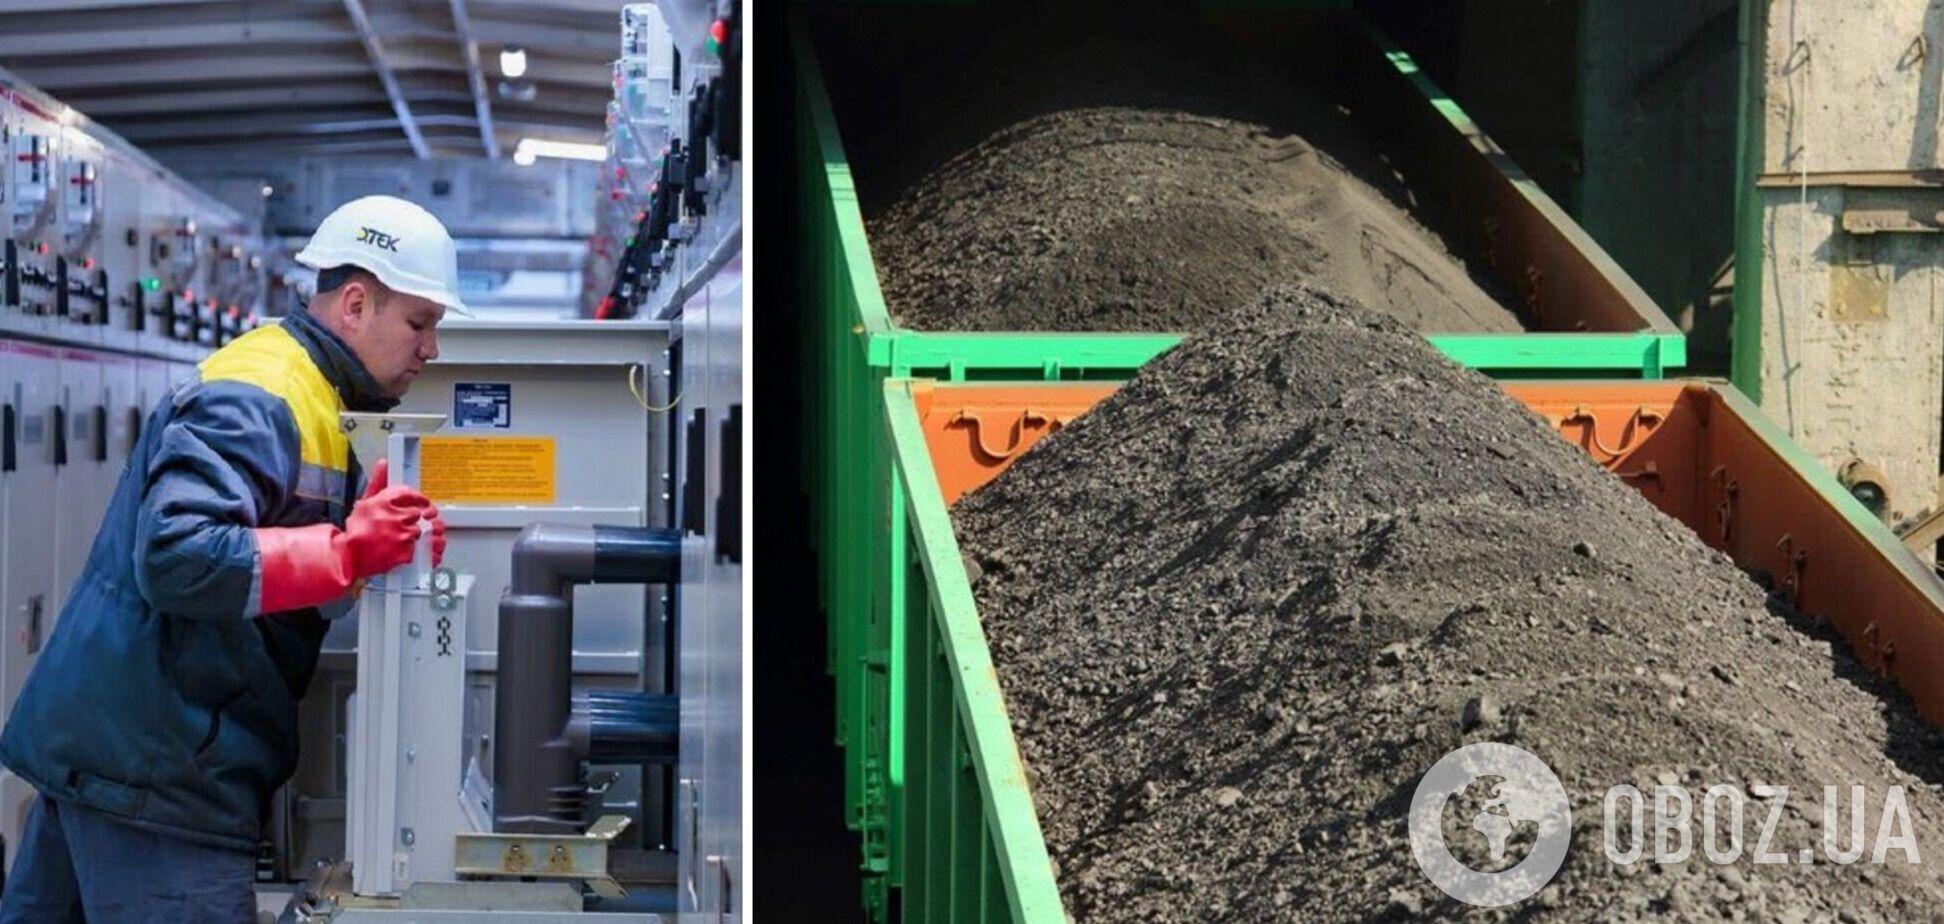 ДТЭК импортировал уже более 300 тыс. тонн угля для более надежного прохождения отопительного сезона